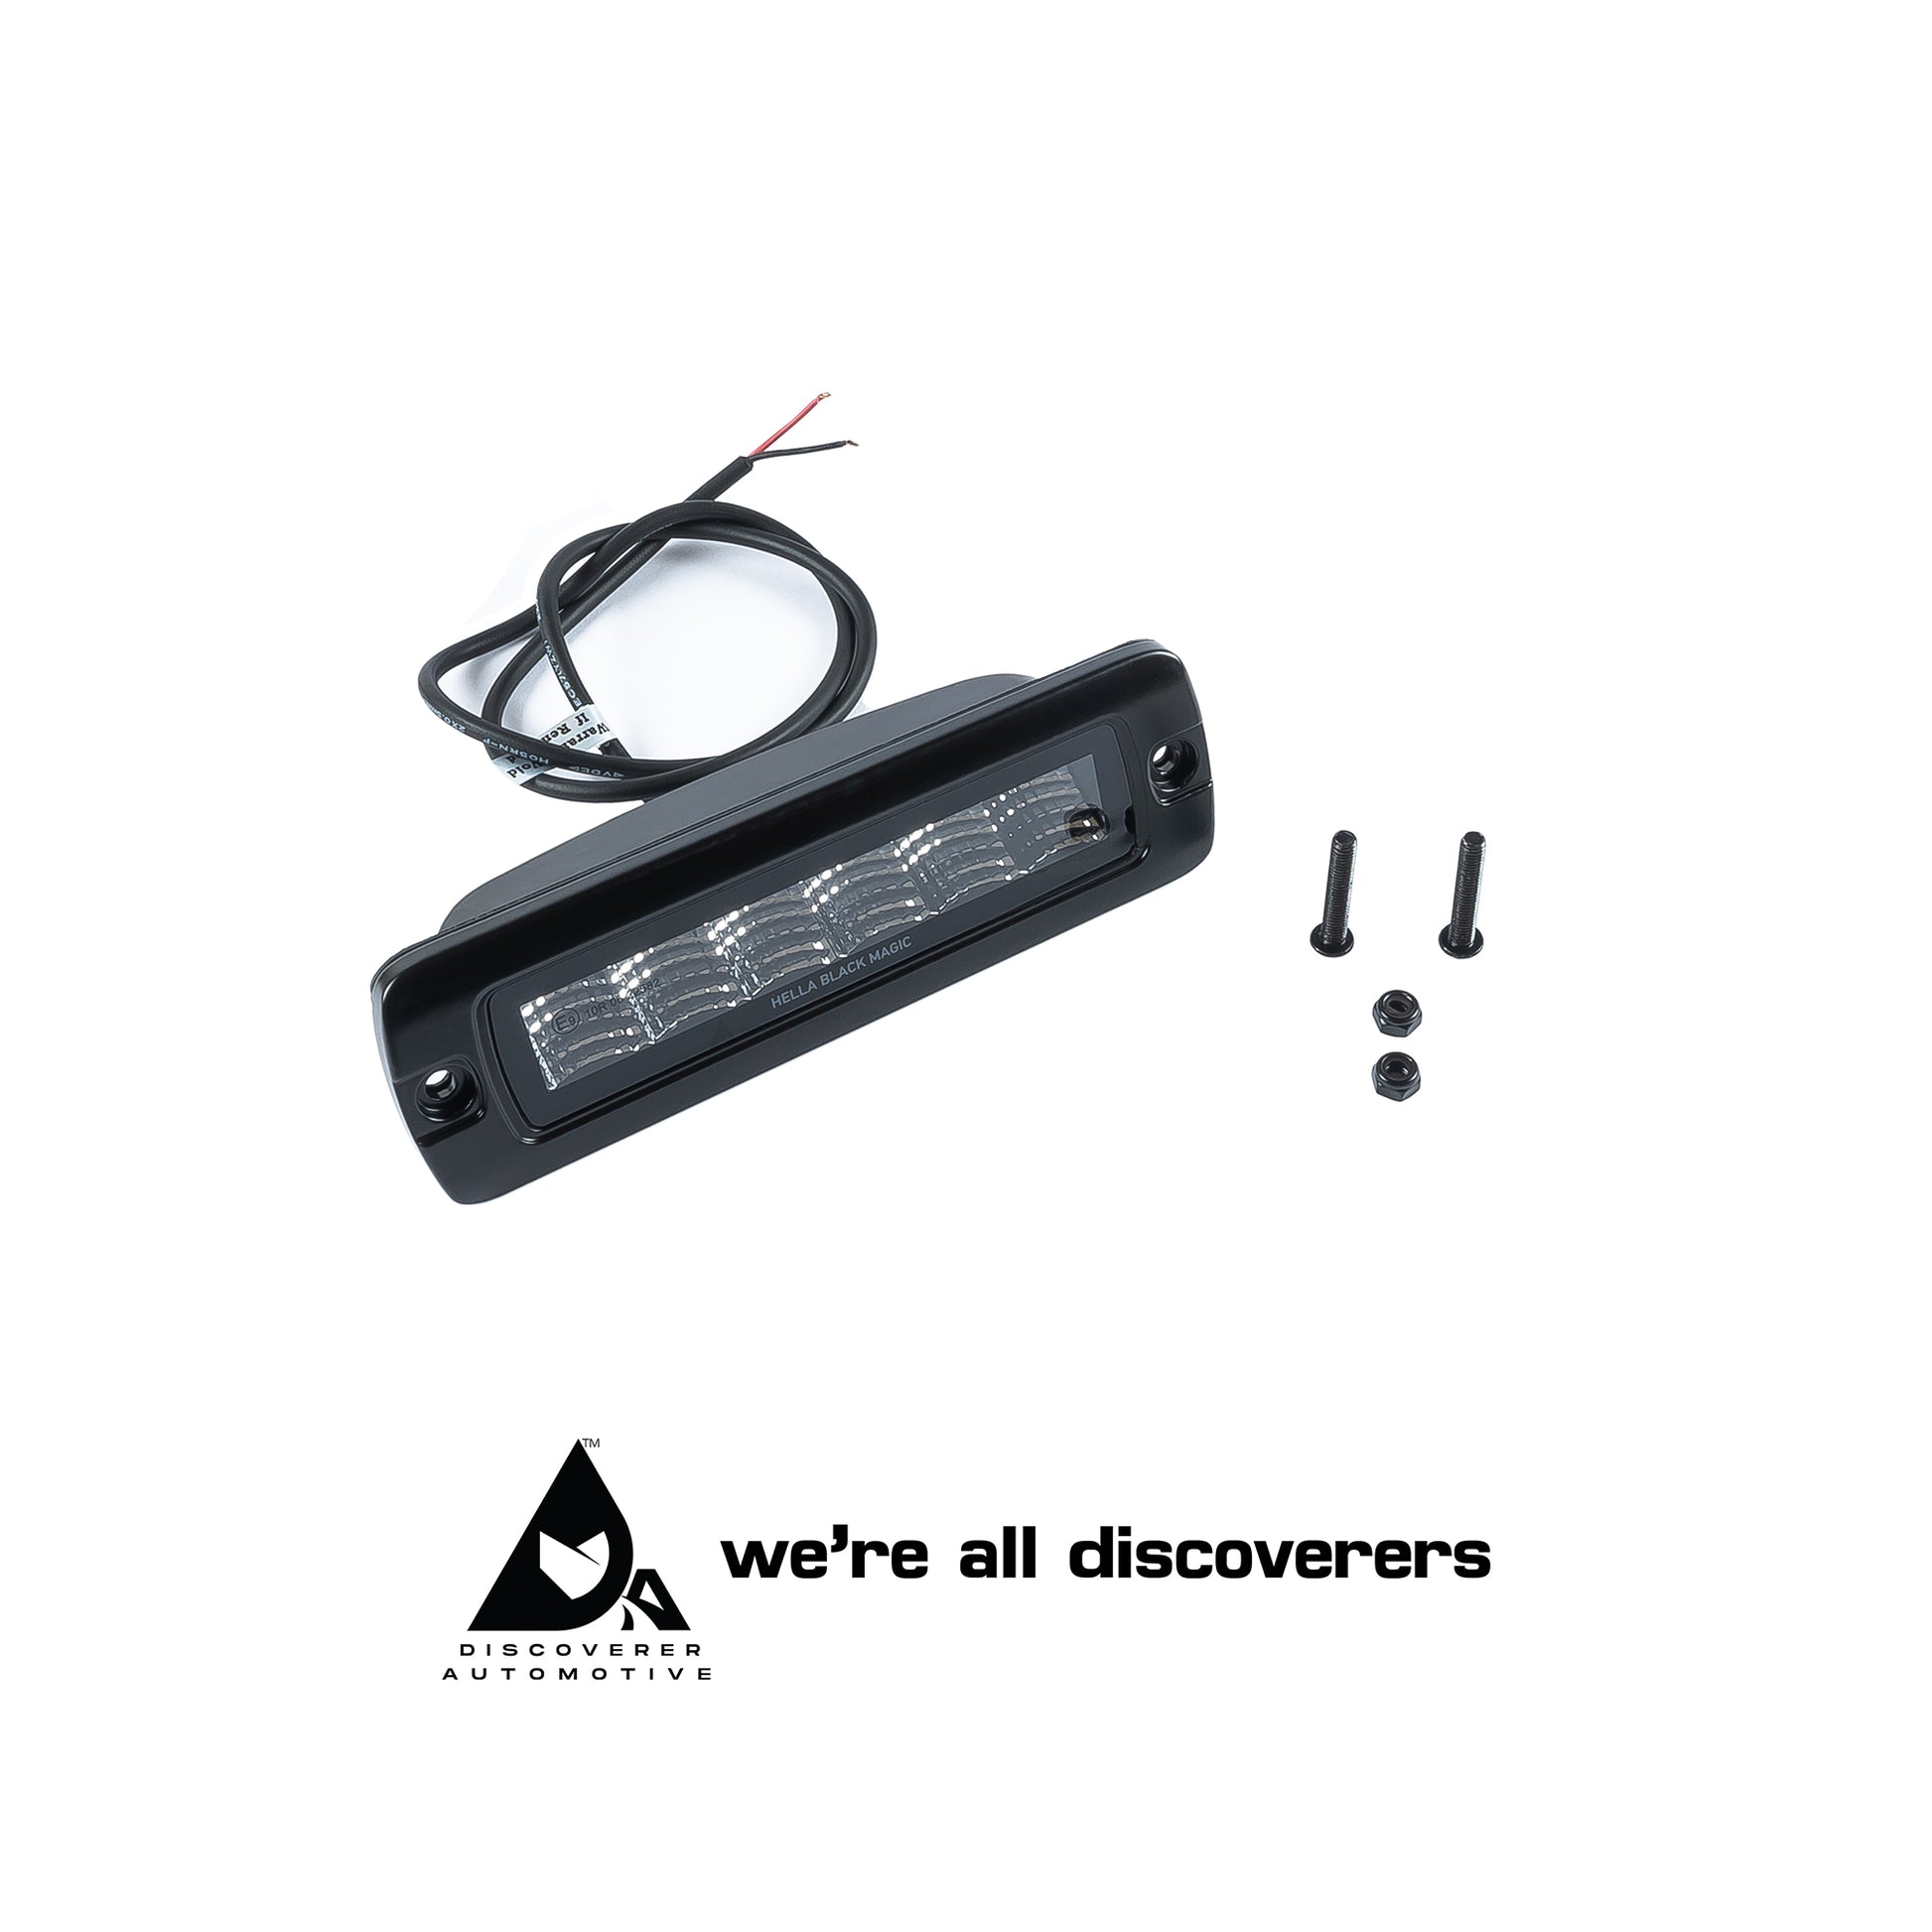 Black Magic LED Mini Lightbar 6.2, Spot